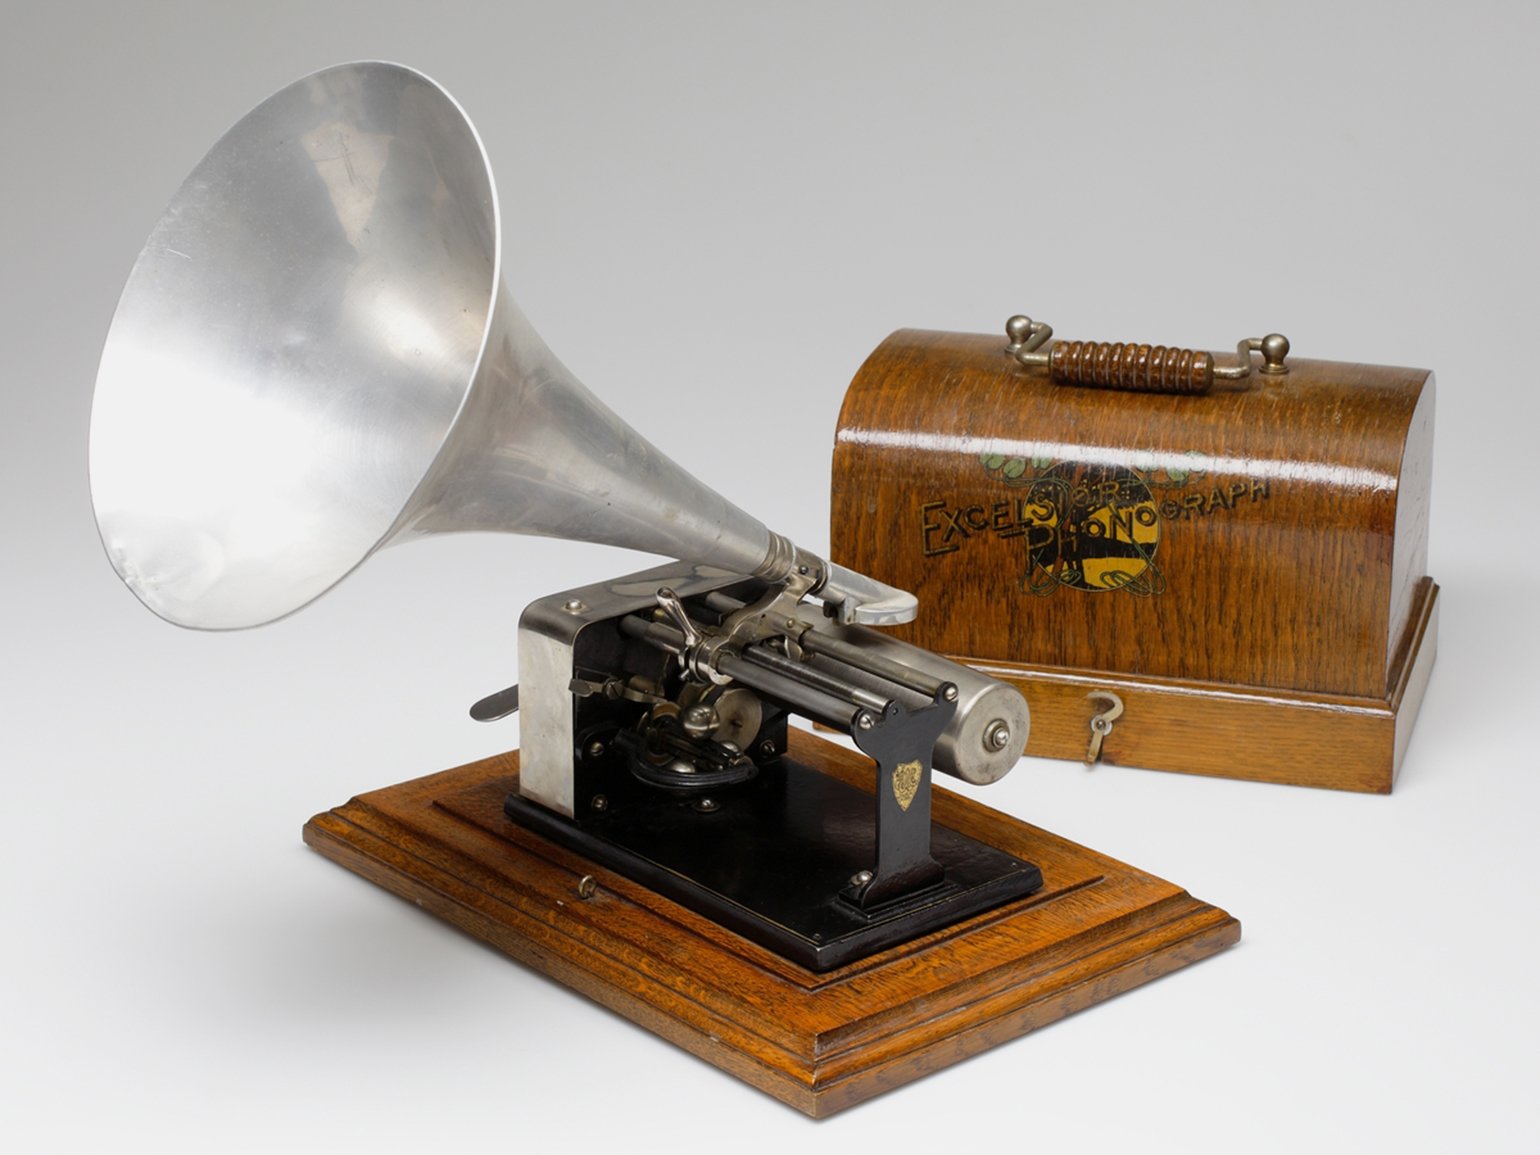 Фонограф звук. Фонограф Эдисона 1878. Фонограф 1877. Первый Фонограф 19 века. 1878 Эдисон продемонстрировал Фонограф.